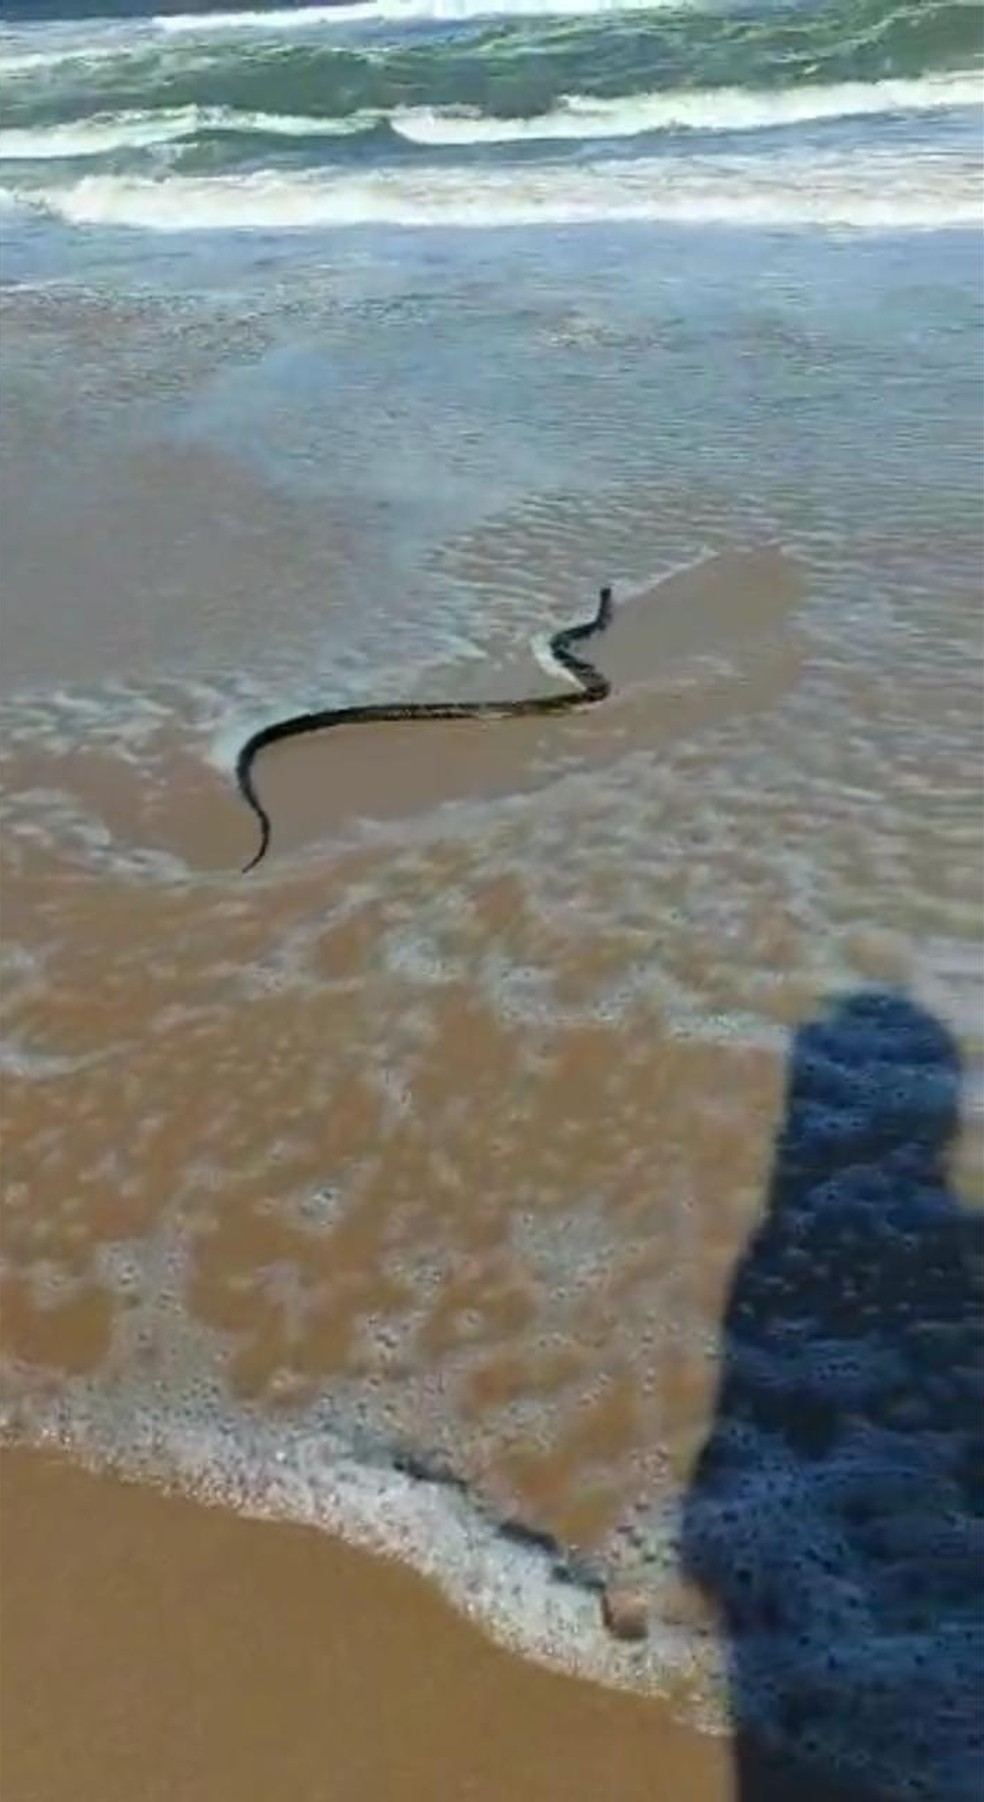 Resgate com cobra da mesma espécie foi feito por um guarda-vidas no mesmo dia na praia de São Francisco do Sul (SC) — Foto: Redes Sociais/Reprodução